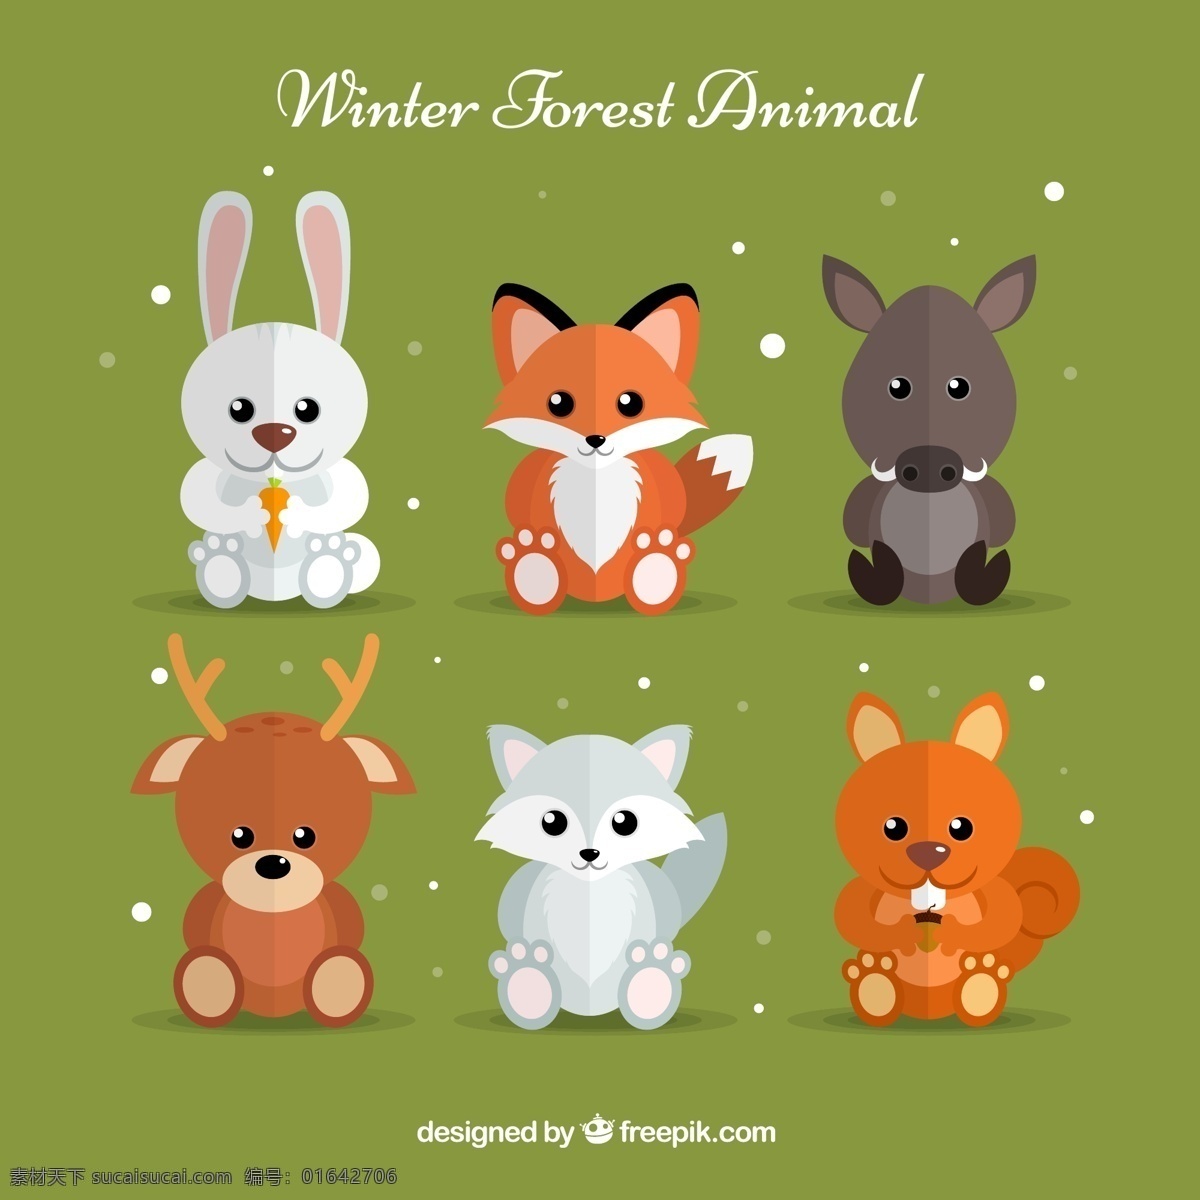 创意 坐姿 森林 动物 兔子 狐狸 野猪 驯鹿 浣熊 松鼠 雪花 生物世界 野生动物